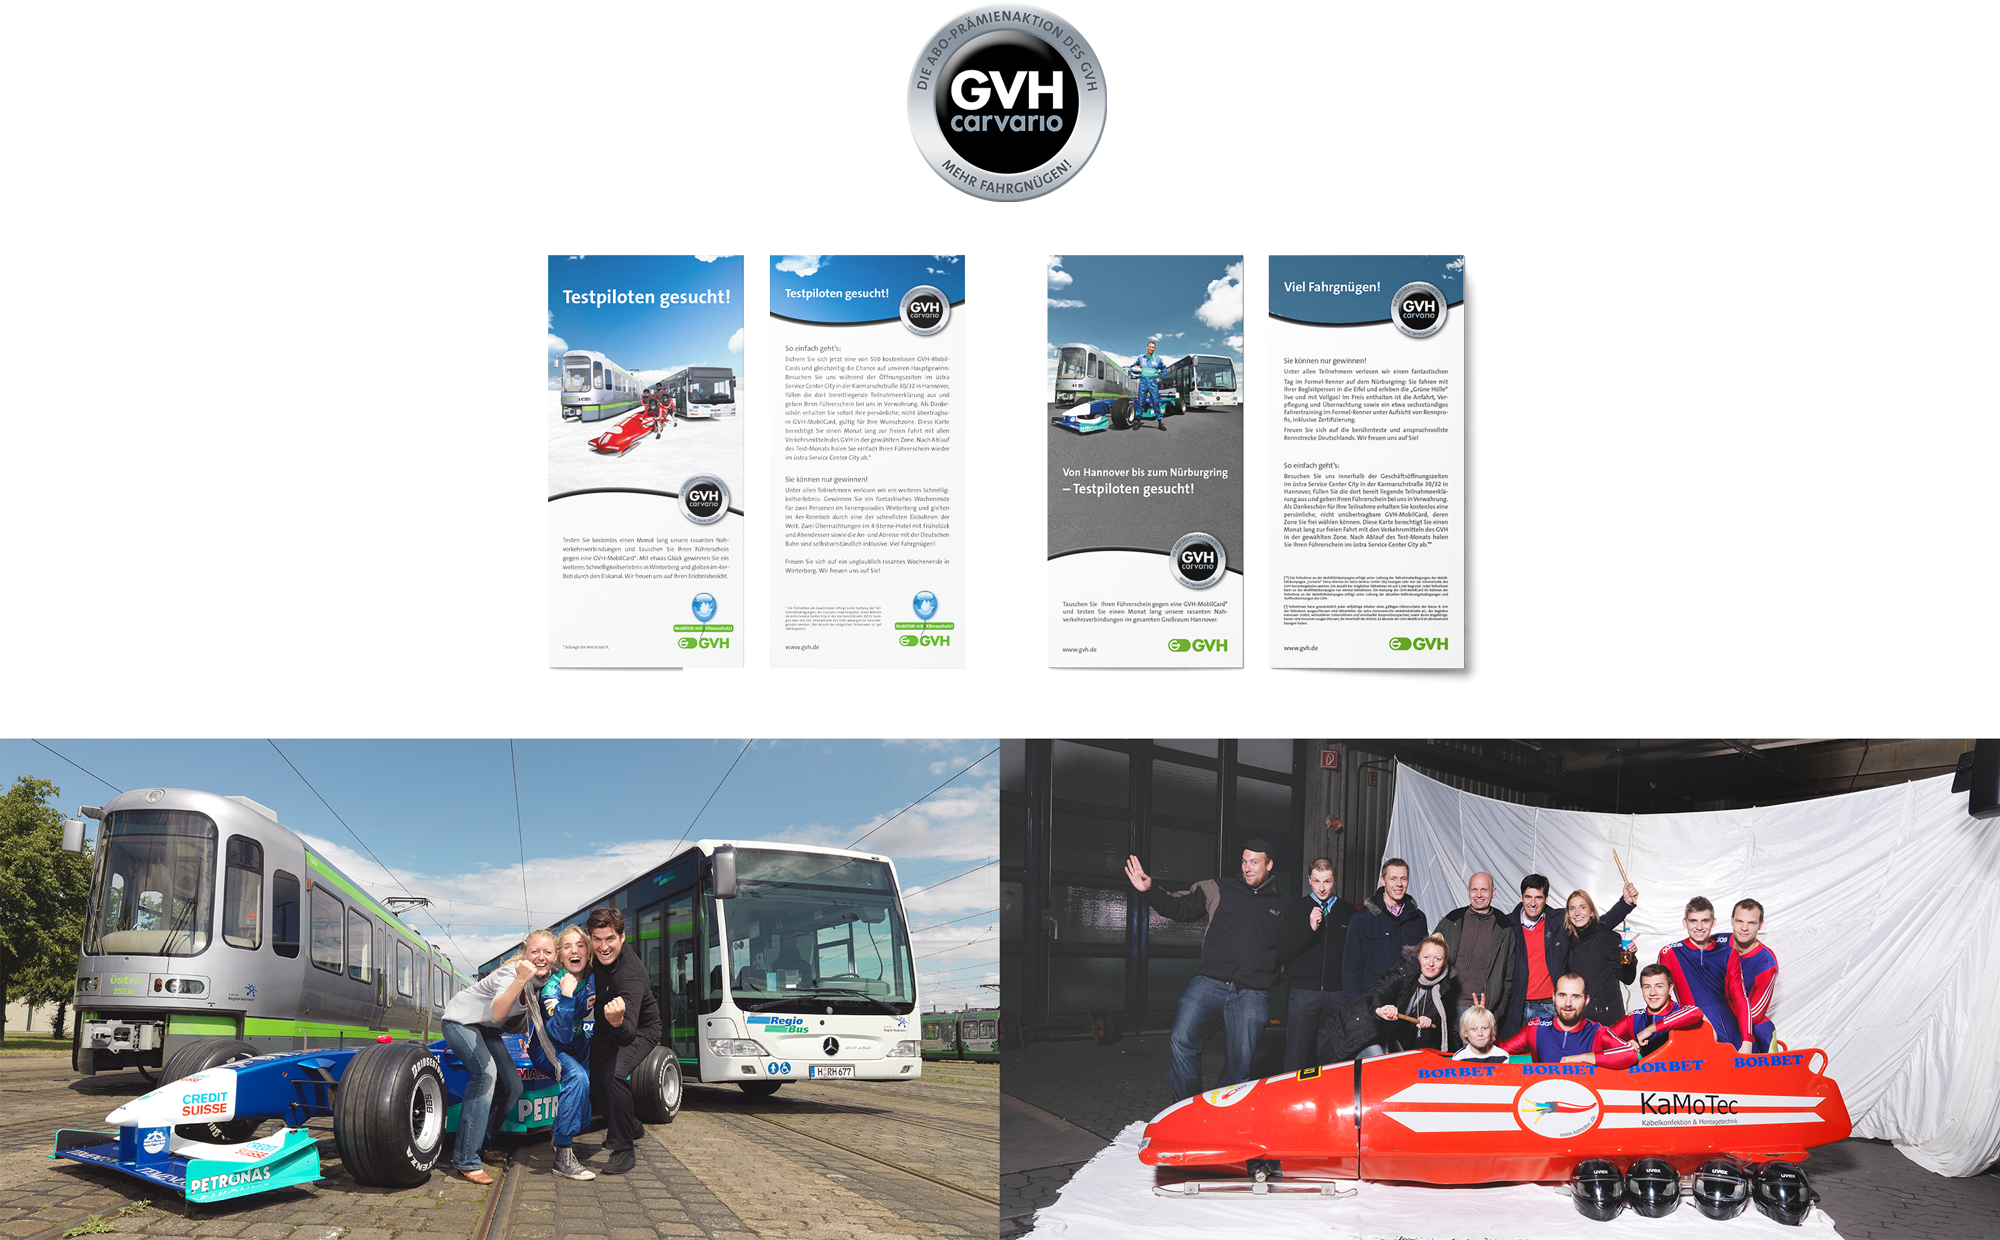 Kampagne für das GVH-Jahresabo mit verschiedenen Flyern und Probefahrten  mit einem Formel-1-Auto.